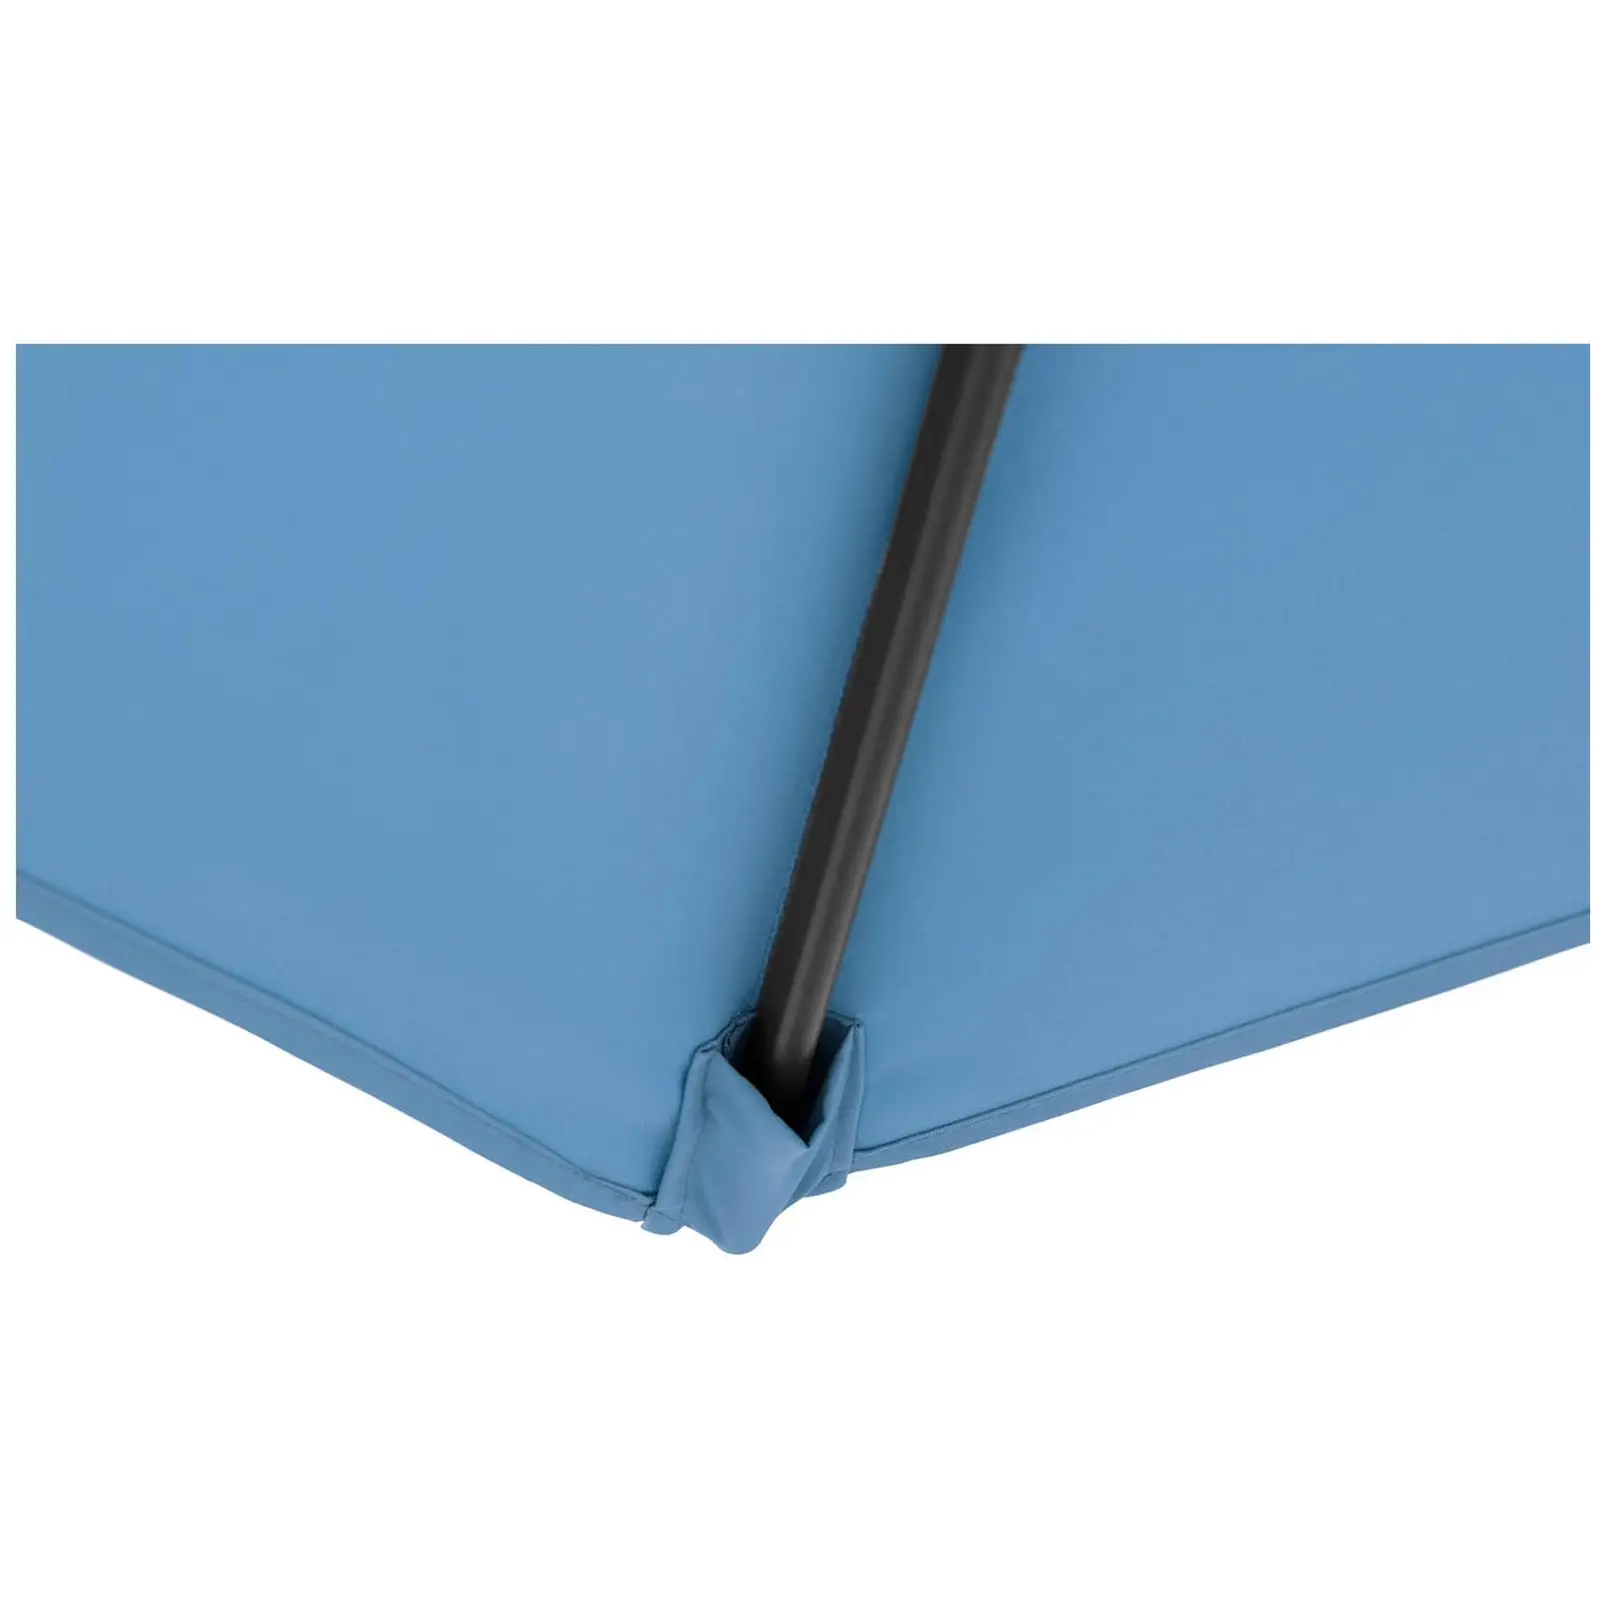 Parasol de jardin - Bleu - Carré - 250 x 250 cm - Pivotant